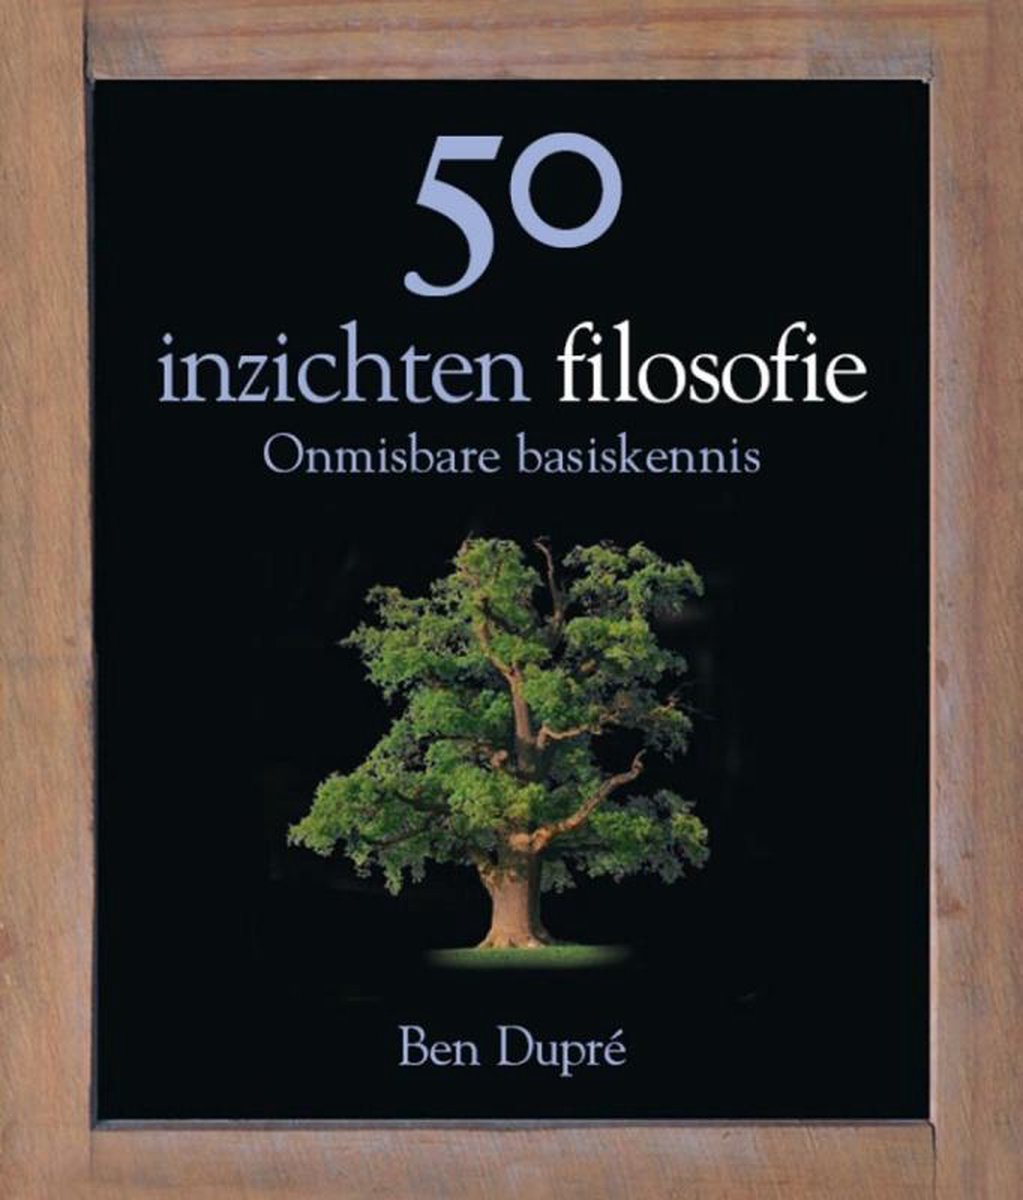 50 inzichten filosofie - B. Dupre